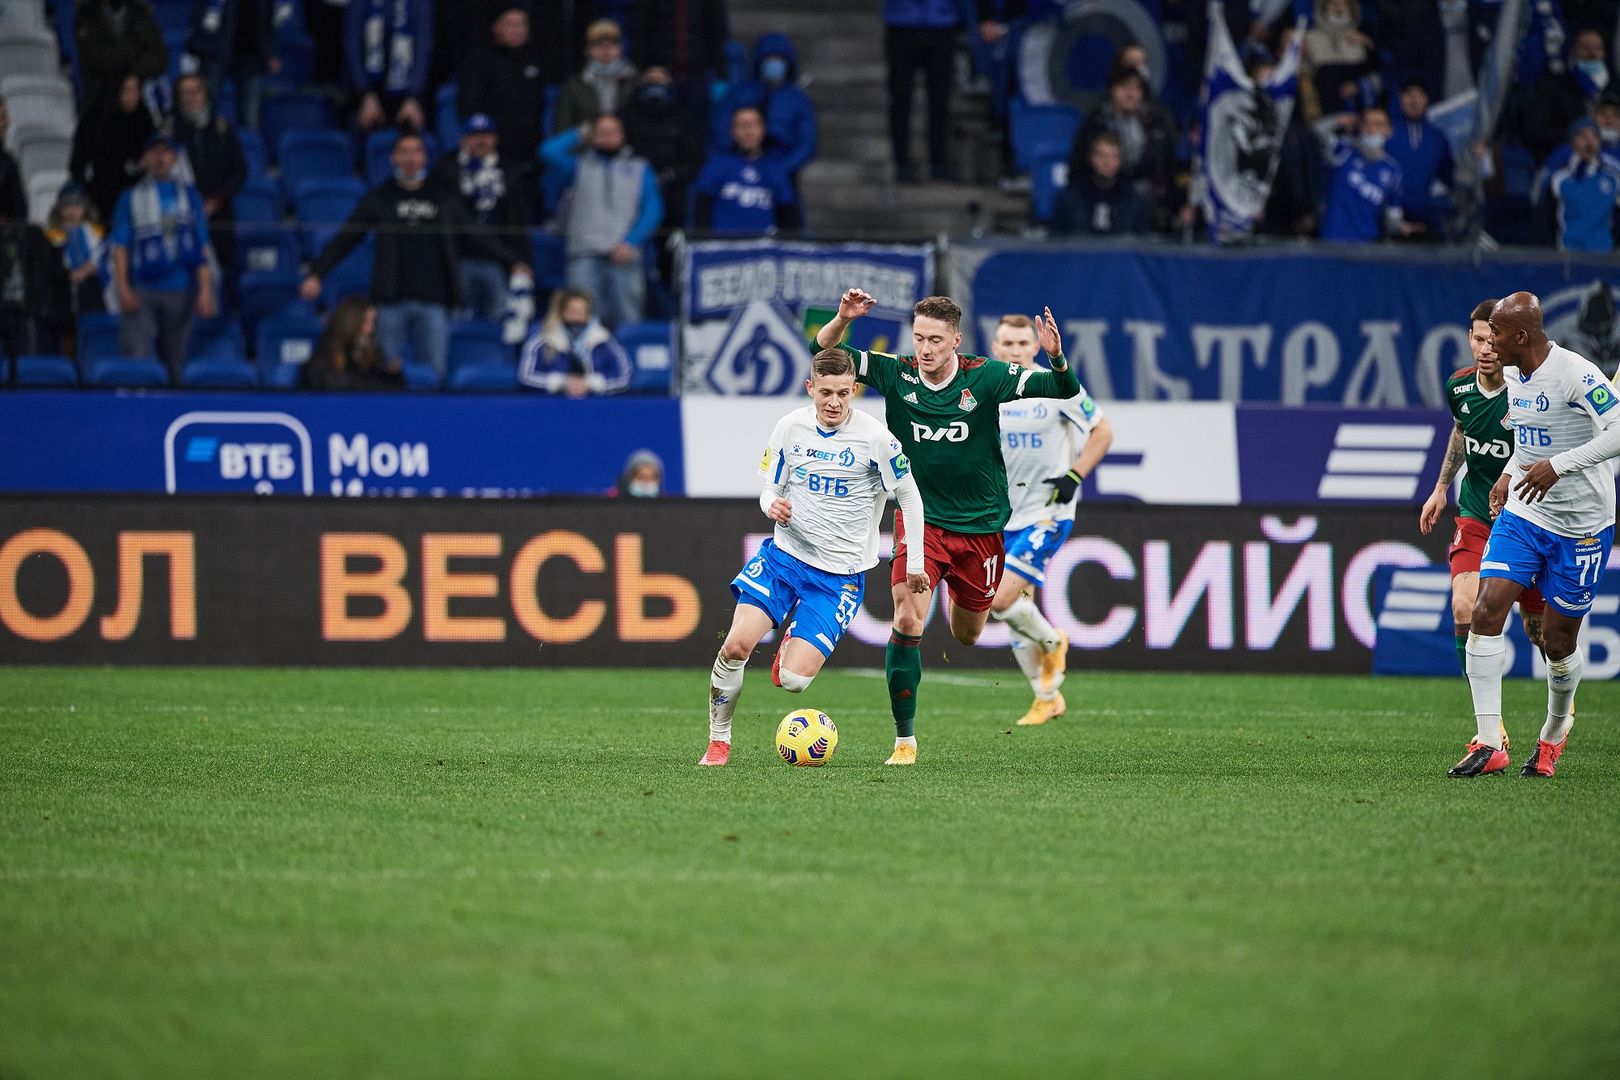 Шиманьски: «Сейчас не время унывать, нужно выйти на поле и победить „Локомотив”»